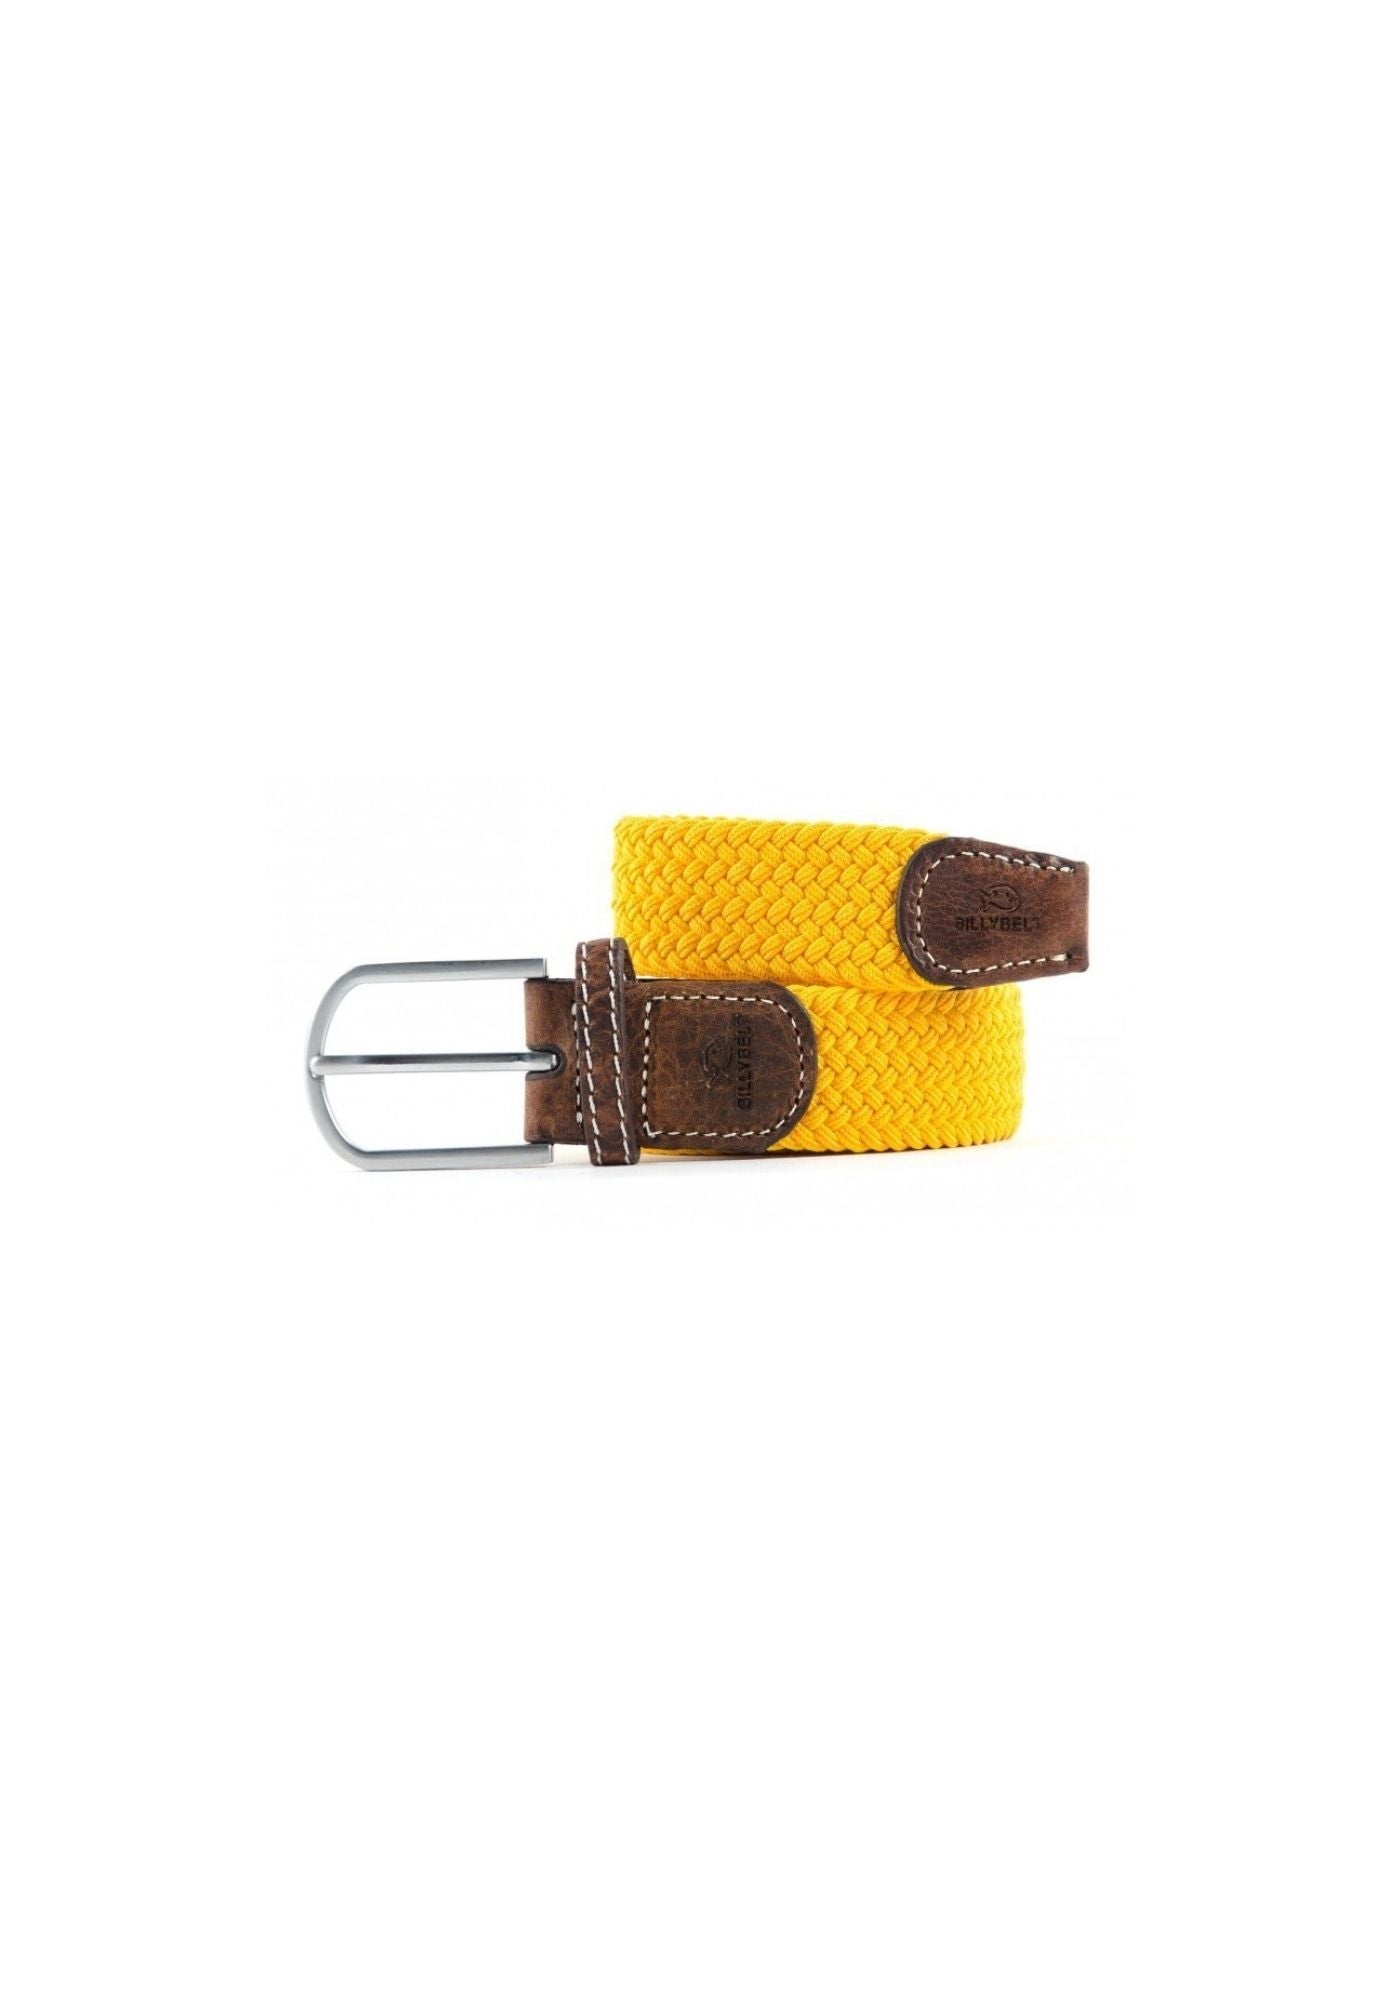 ceinture-tressee-unie-jaune-safran-billybelt